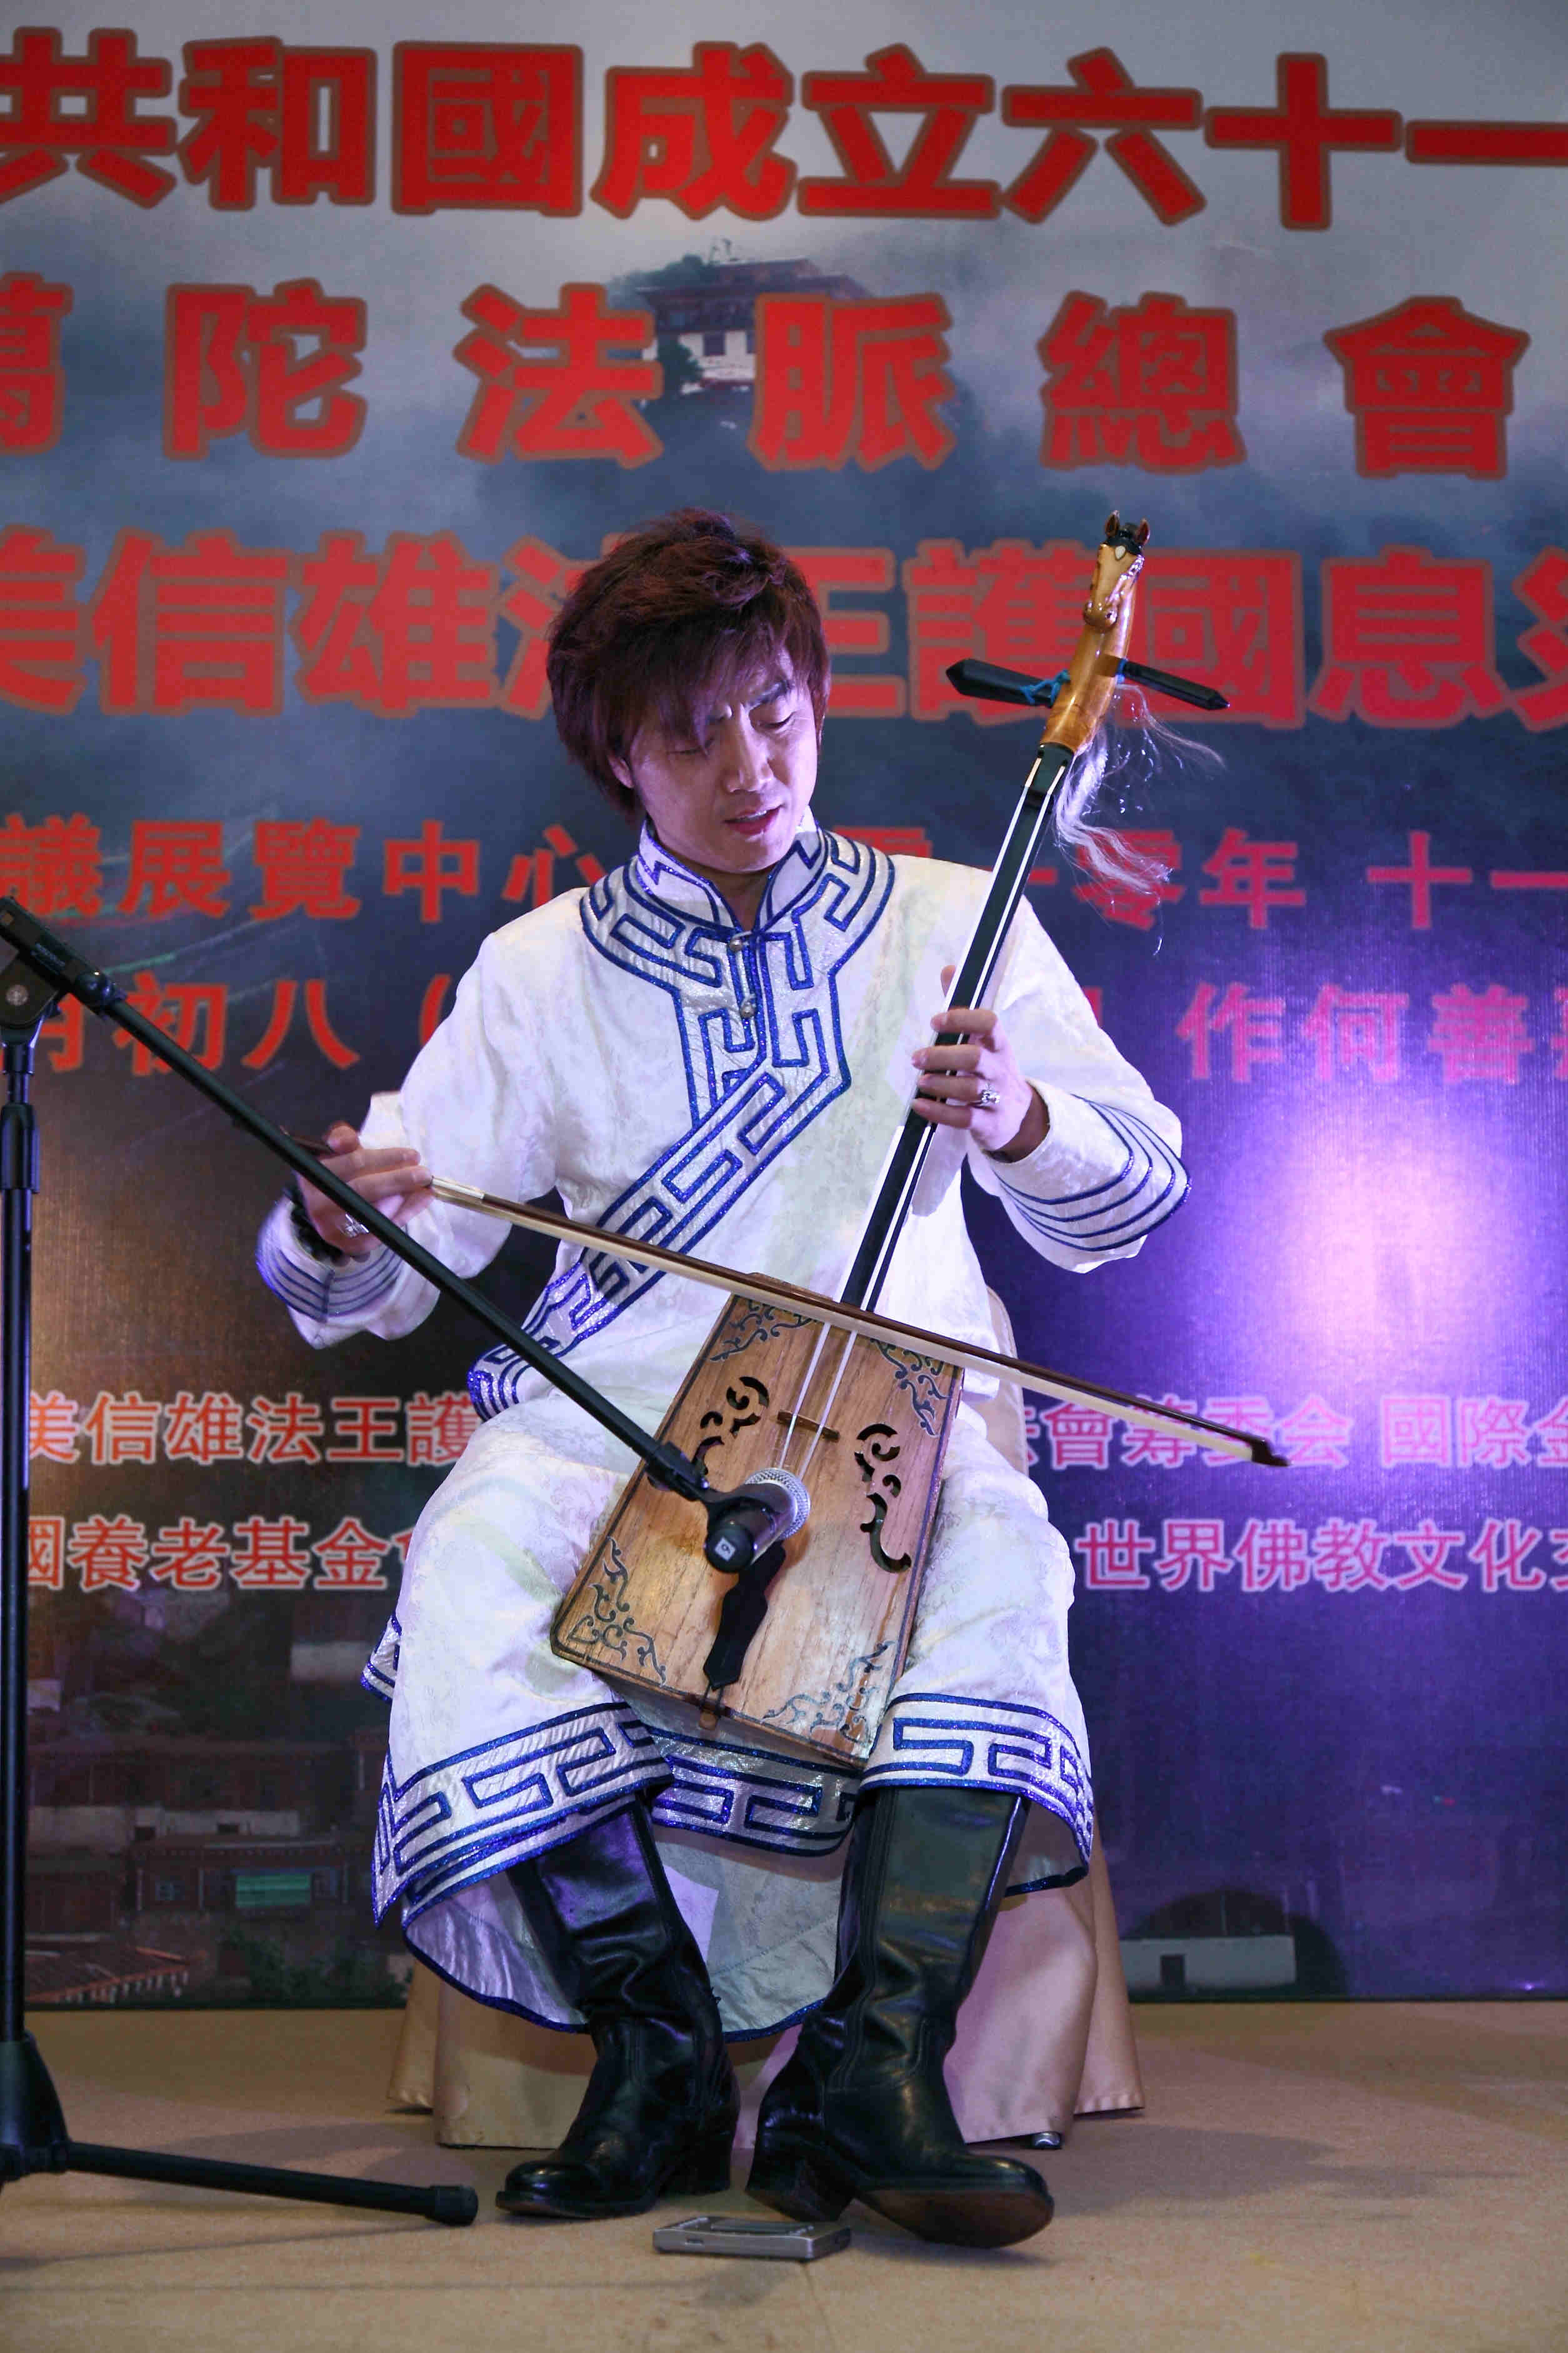 賽音吉雅在大會上表演馬頭琴獨奏曲